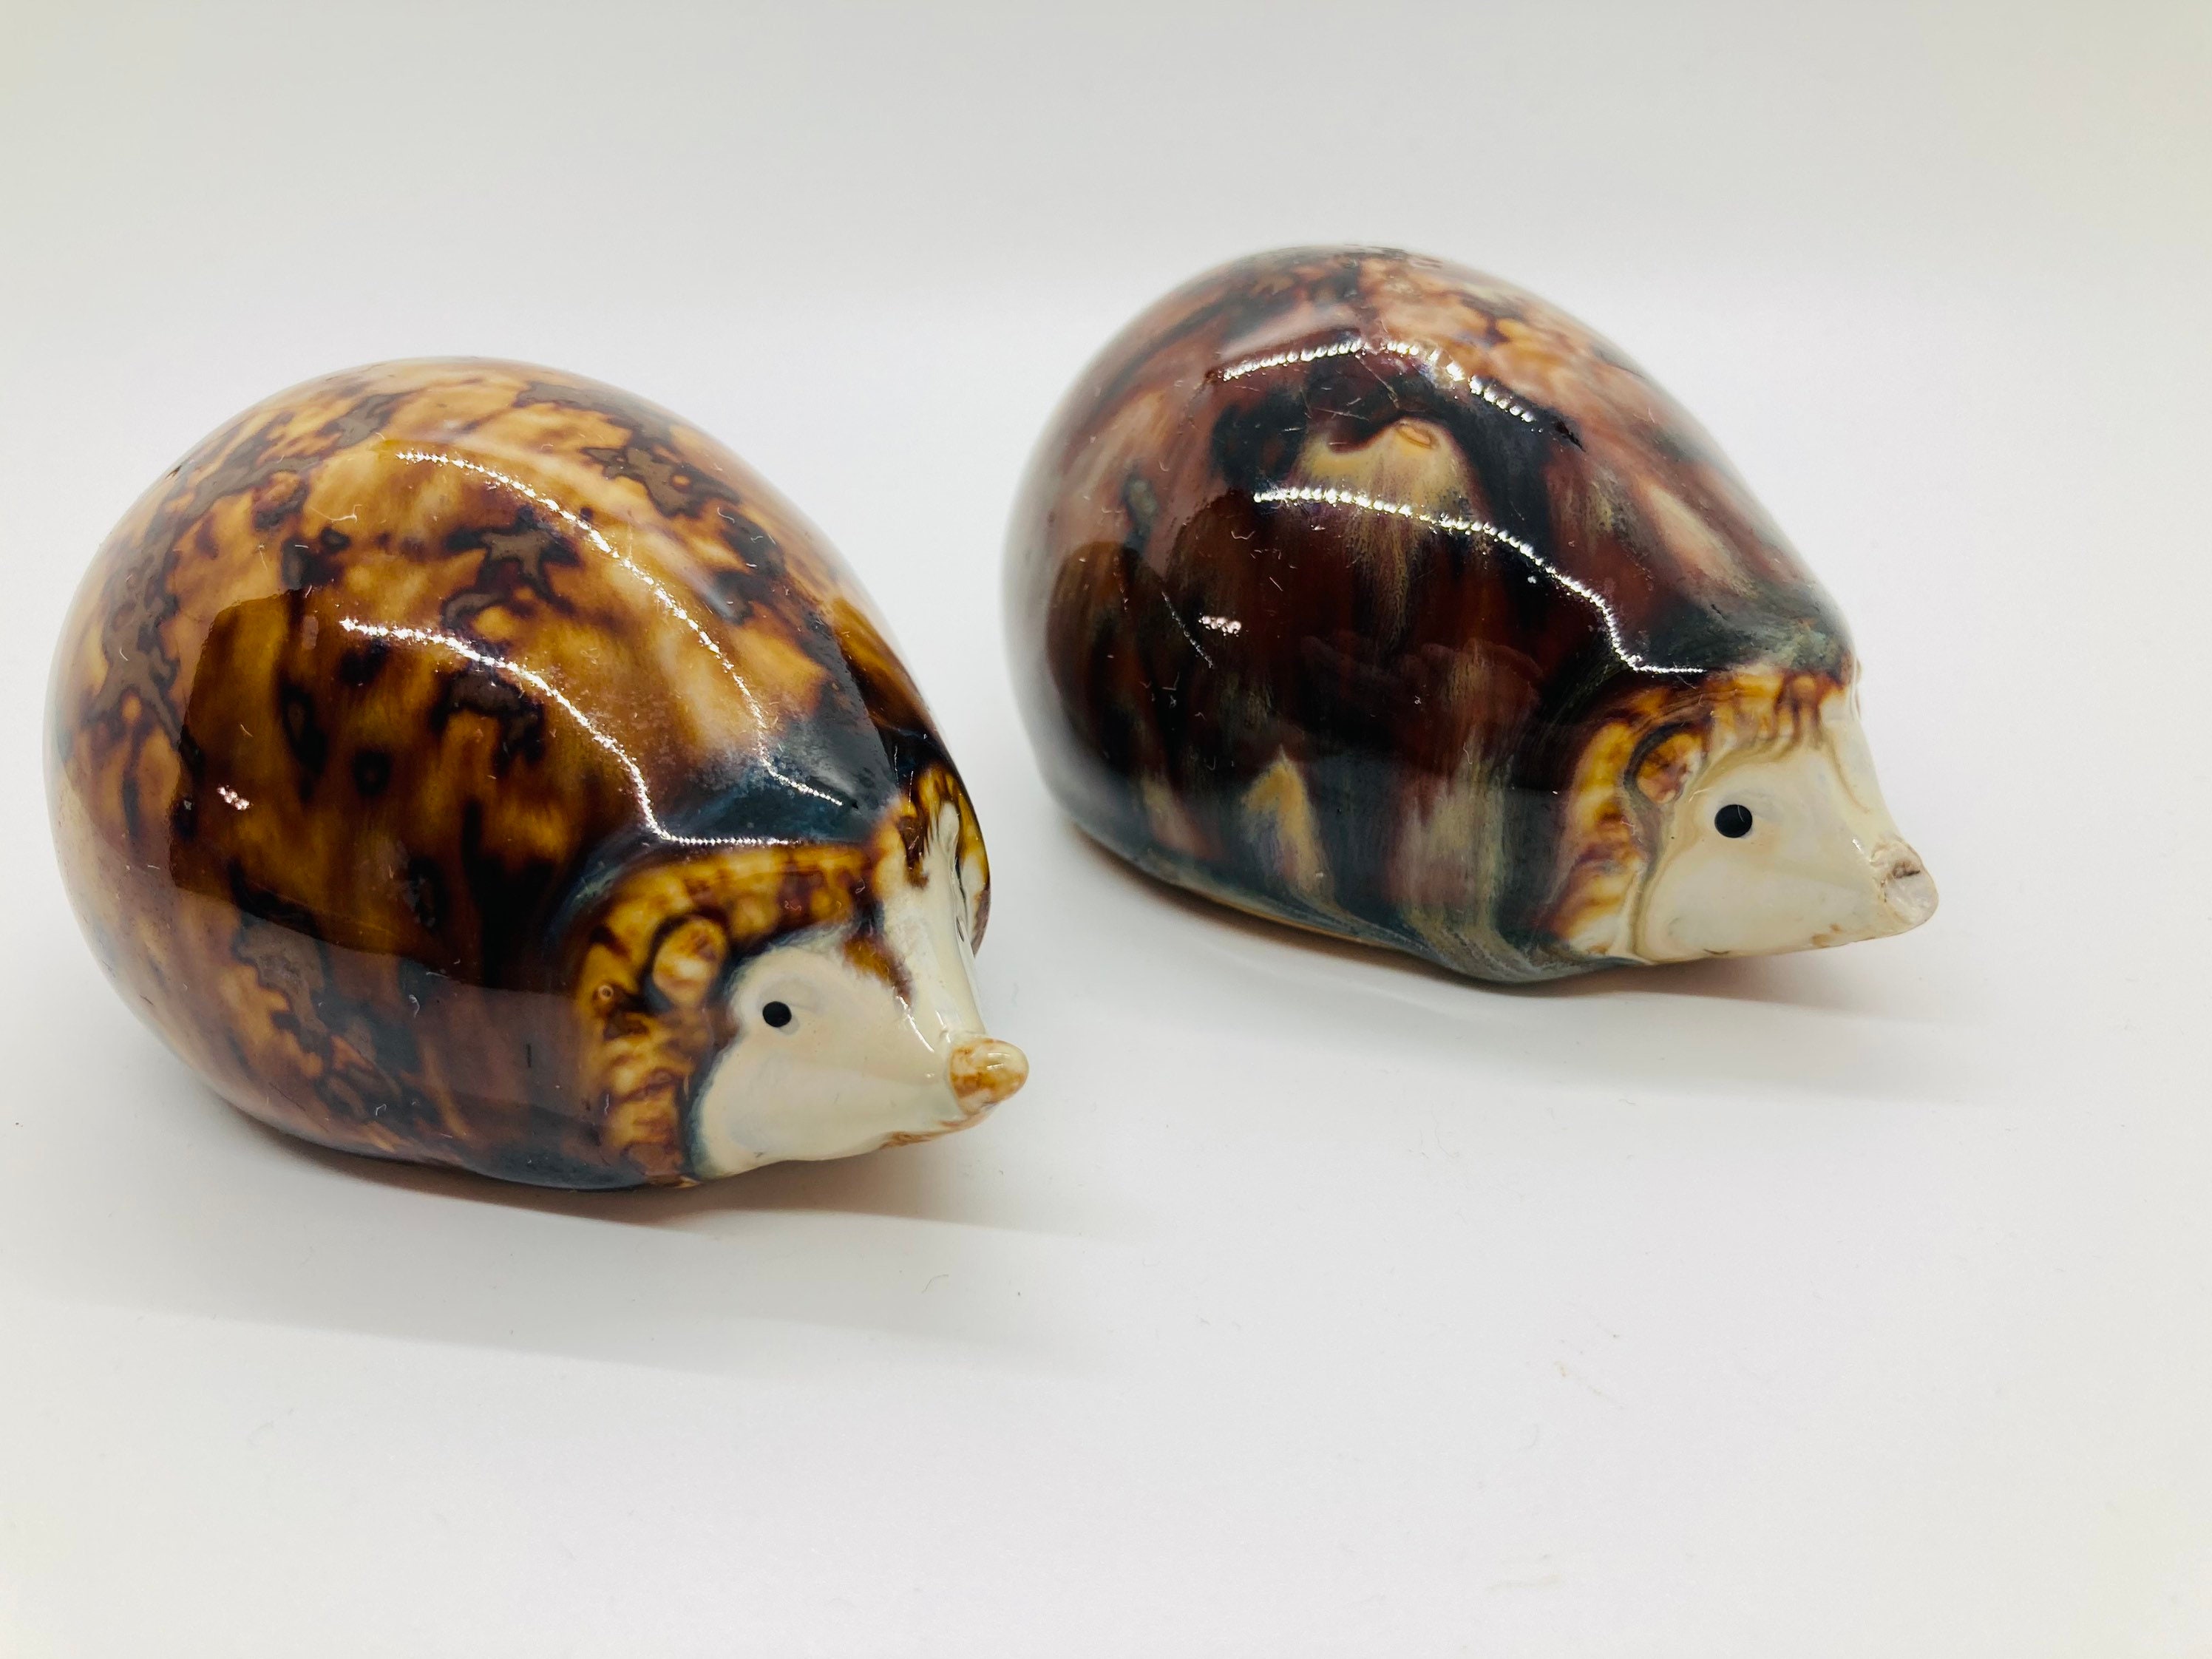 His & Hers Hedgehog Jars Set of 2 Paint Your Own Ceramic Keepsake 